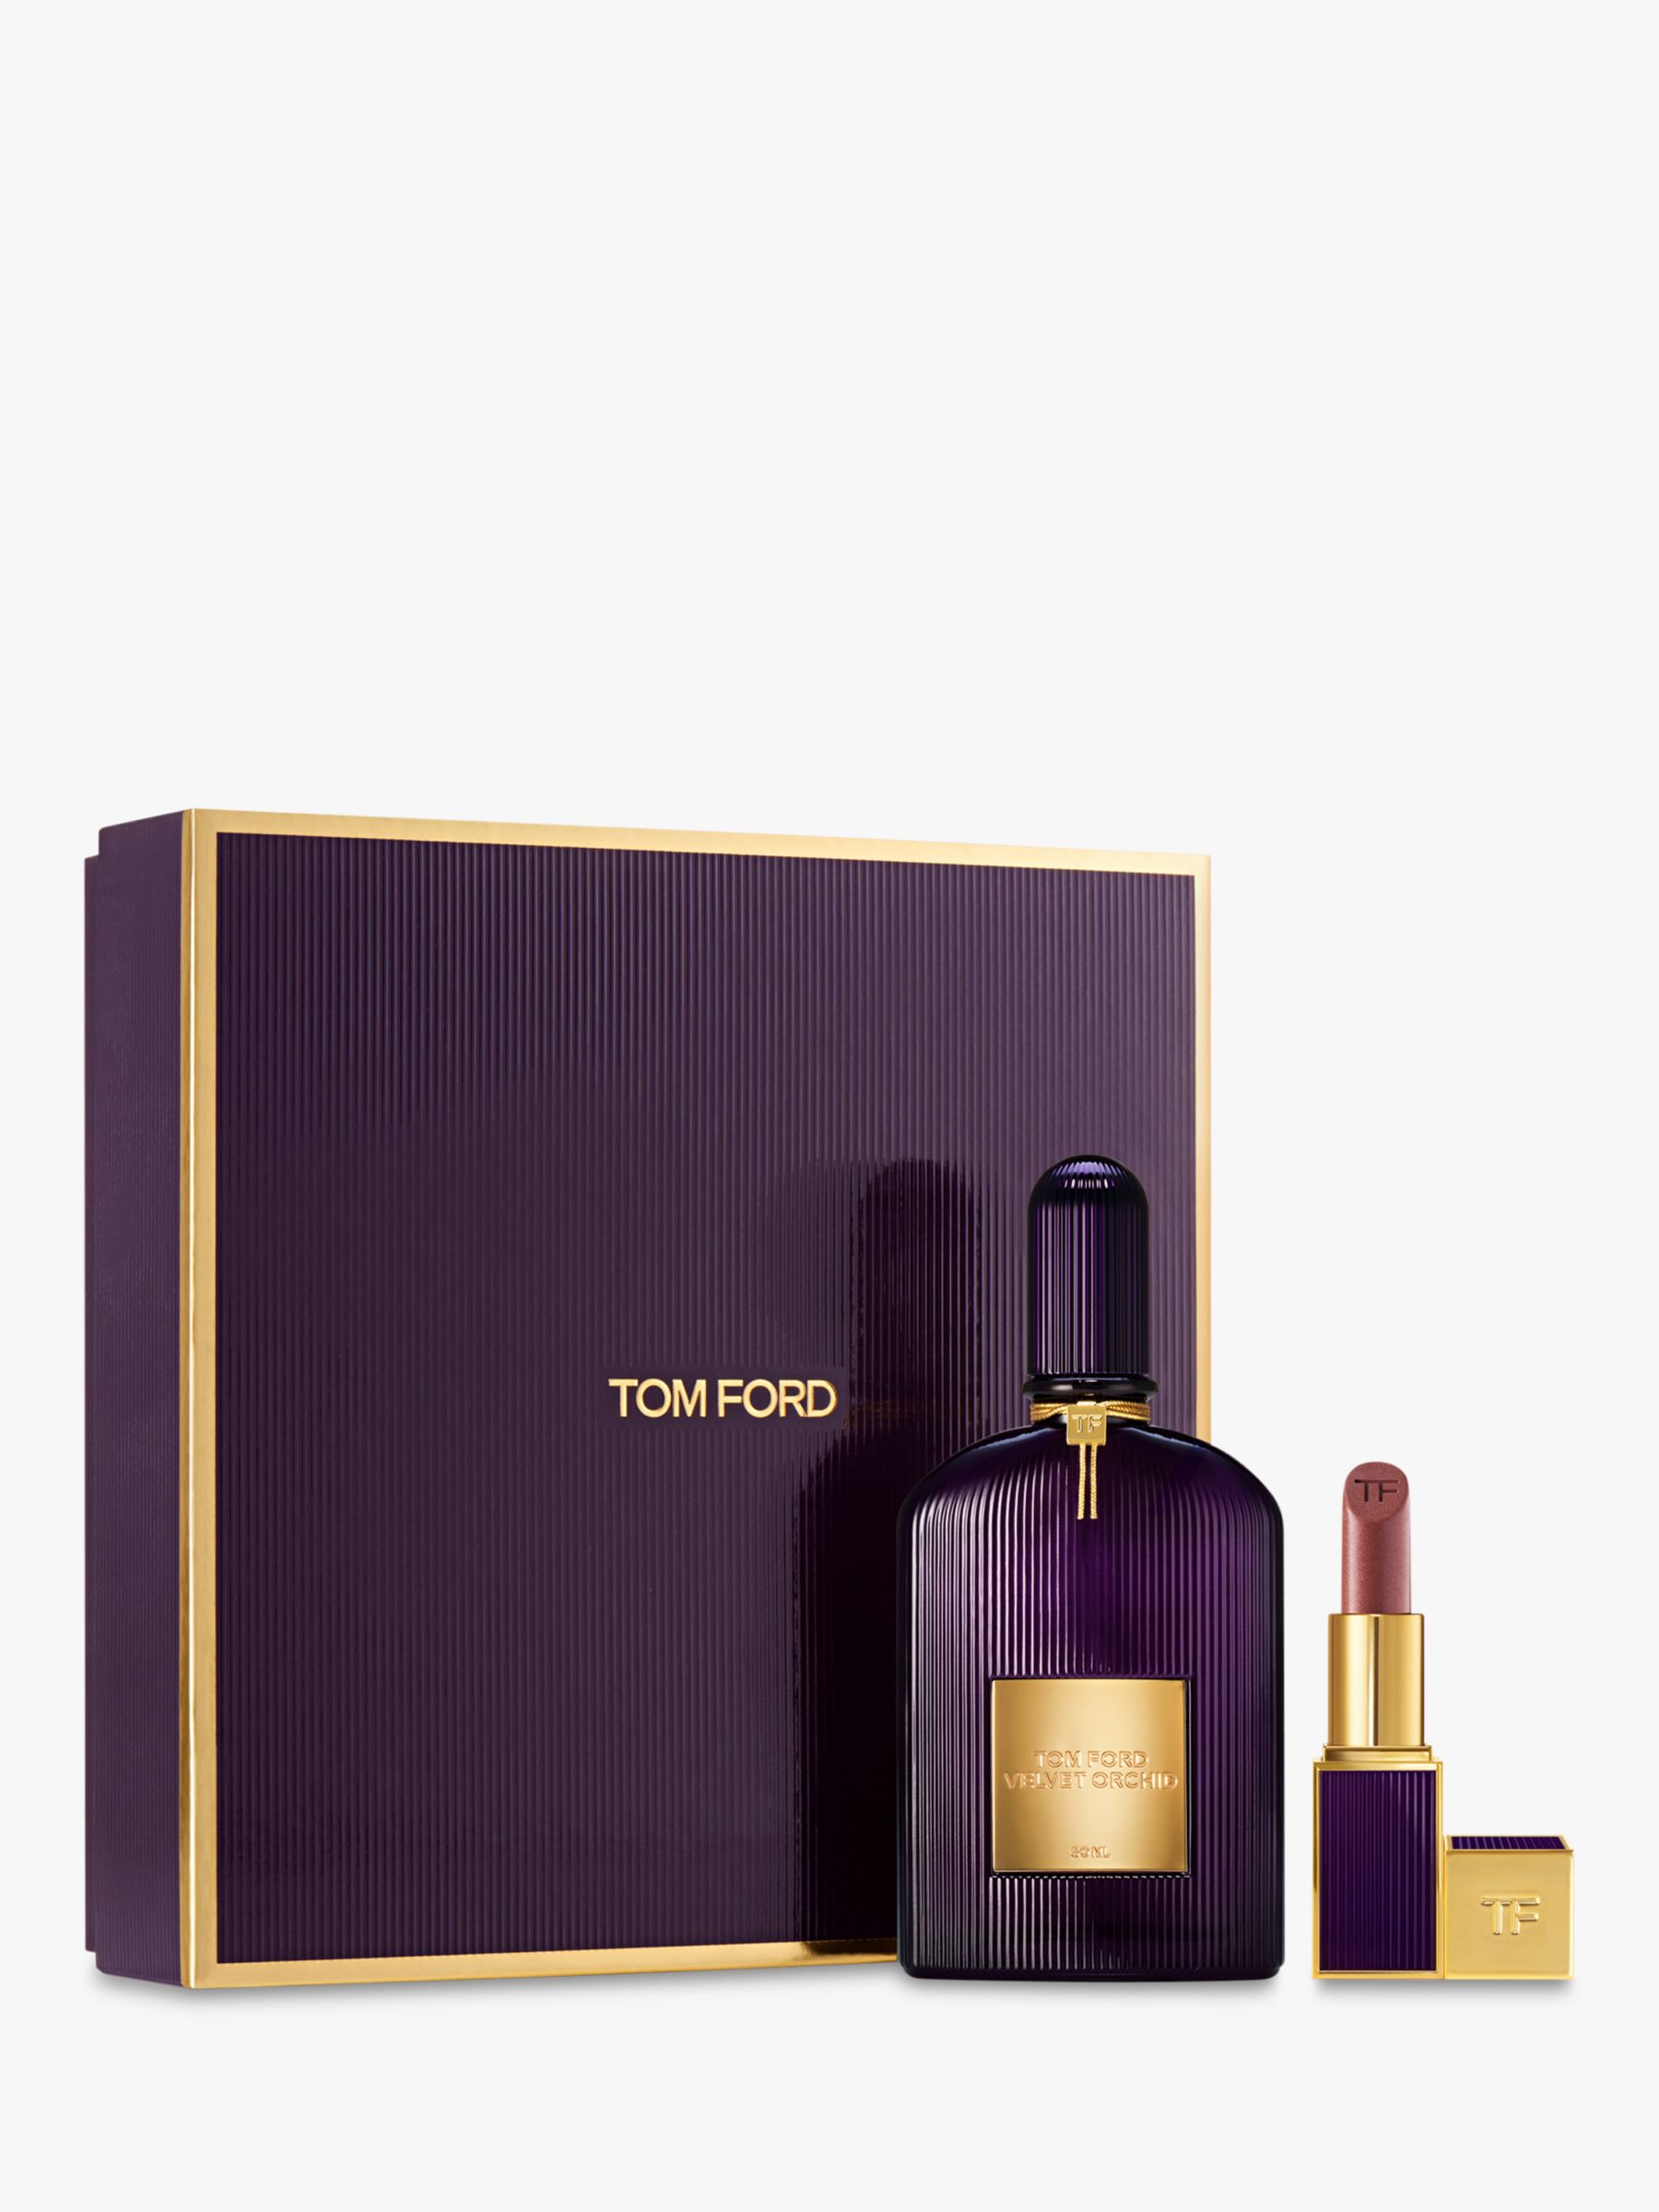 TOM FORD Velvet Orchid Eau Fragrance Gift Parfum Set 50ml de